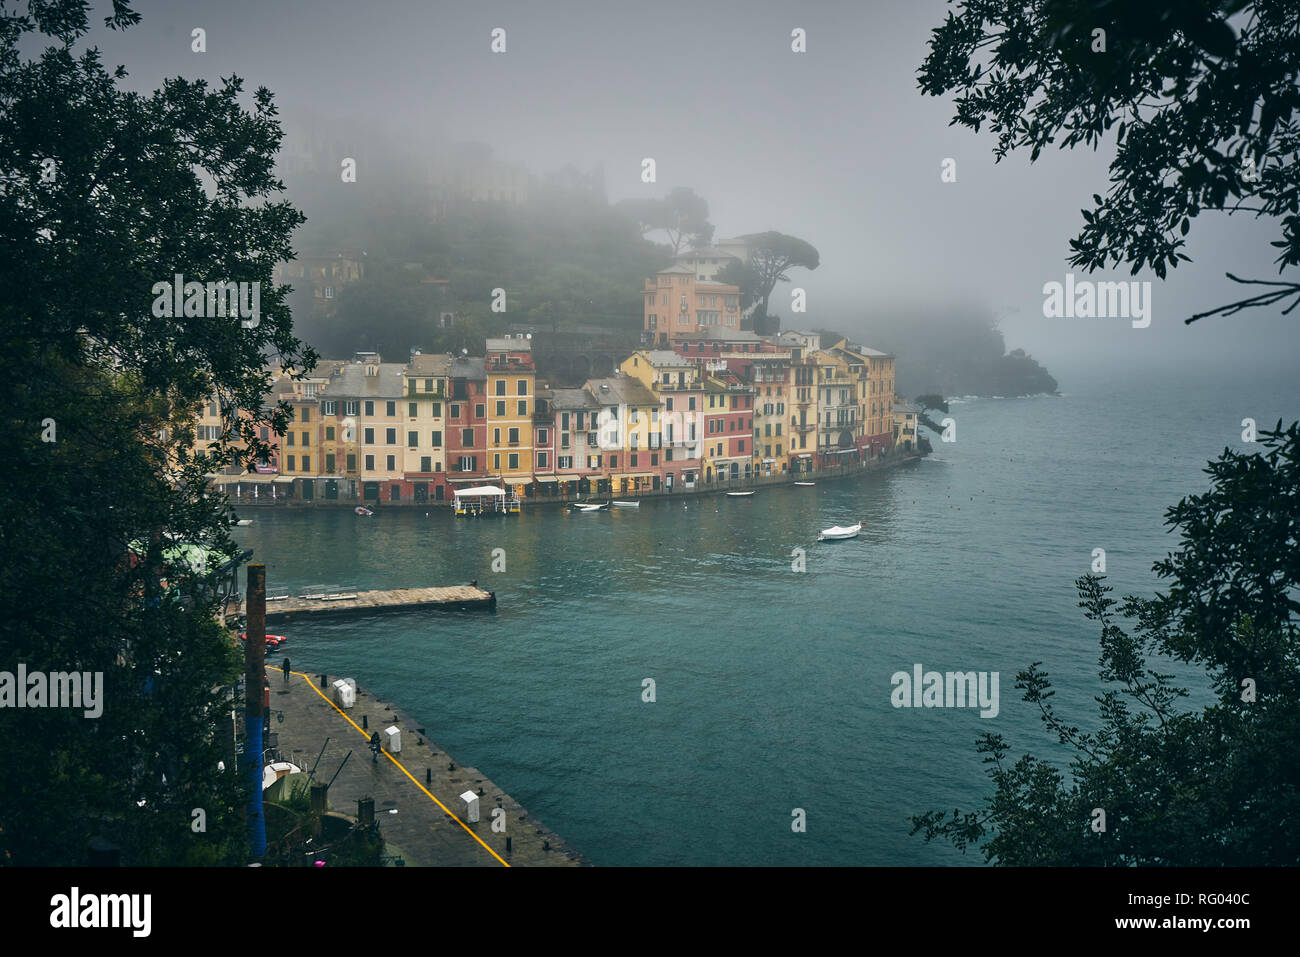 Panorama von Portofino an einem nebligen und regnerischen Tag. Fischerdorf / Ferienort in Italienisch Riveria, Italien. Stockfoto